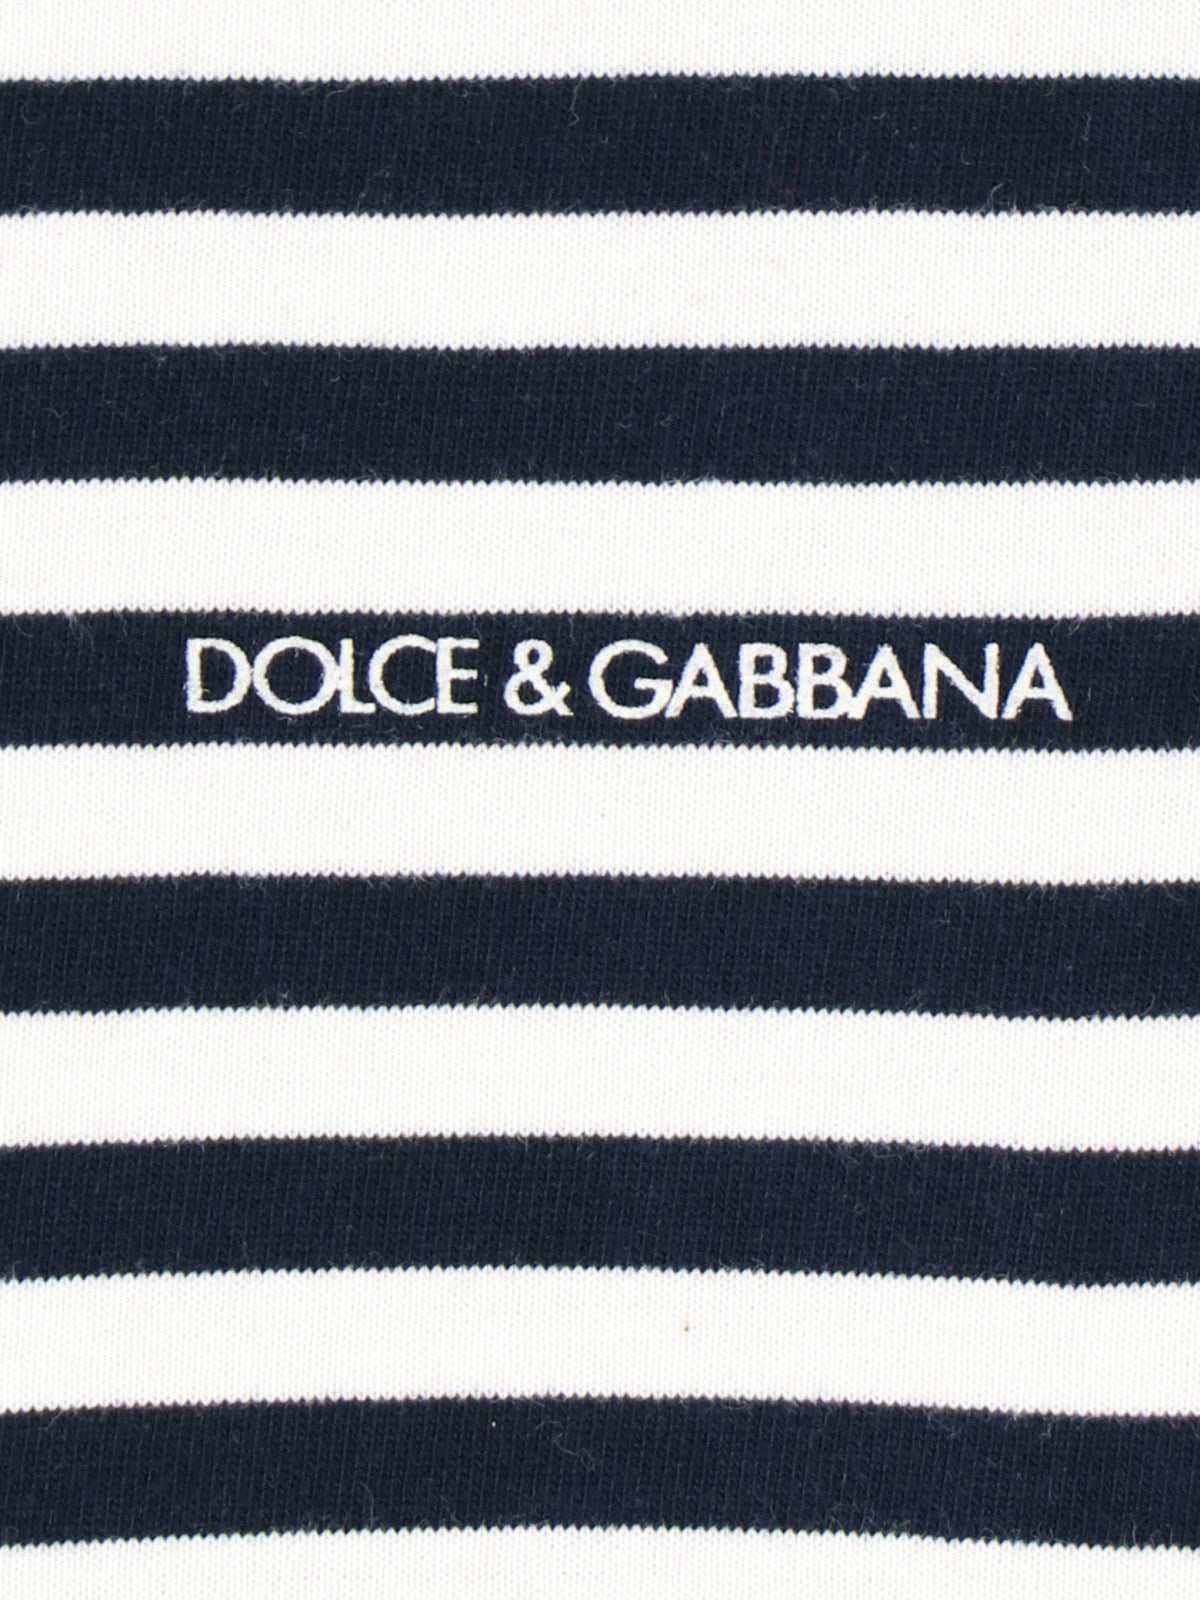 Dolce & Gabbana Maglietta a righe logo-maglie a maniche lunghe-Dolce & Gabbana-Maglietta a righe logo Dolce & Gabbana, in cotone nero, pattern a righe con dettagli panna, girocollo, stampa logo bianco fronte, orlo dritto.-Dresso